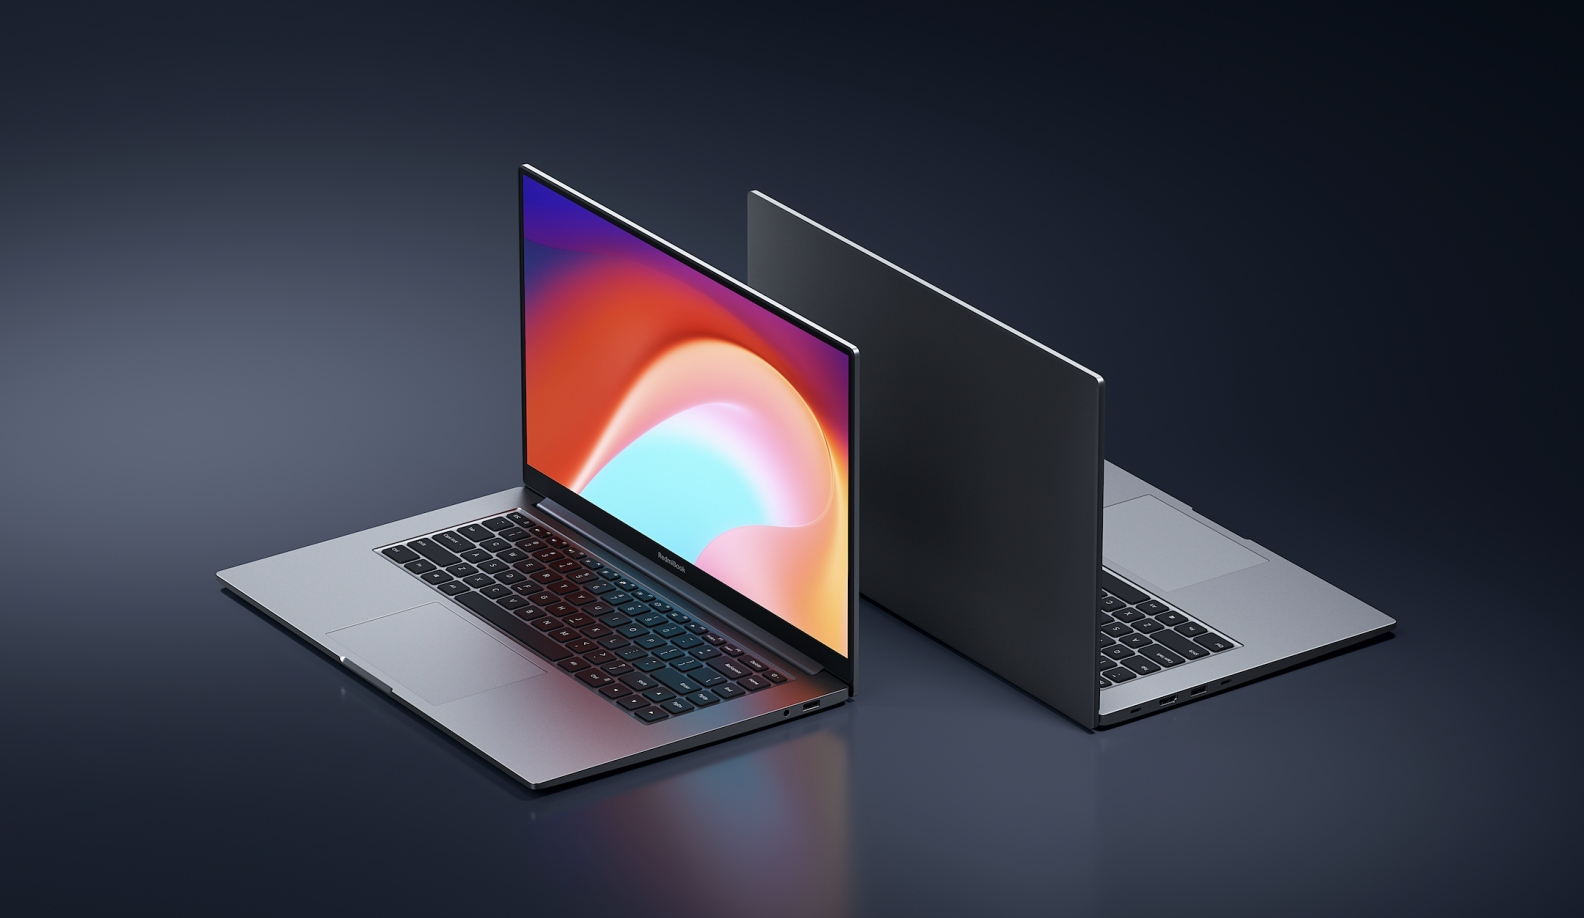 全系标配最新锐龙4000处理器 RedmiBook三款齐发